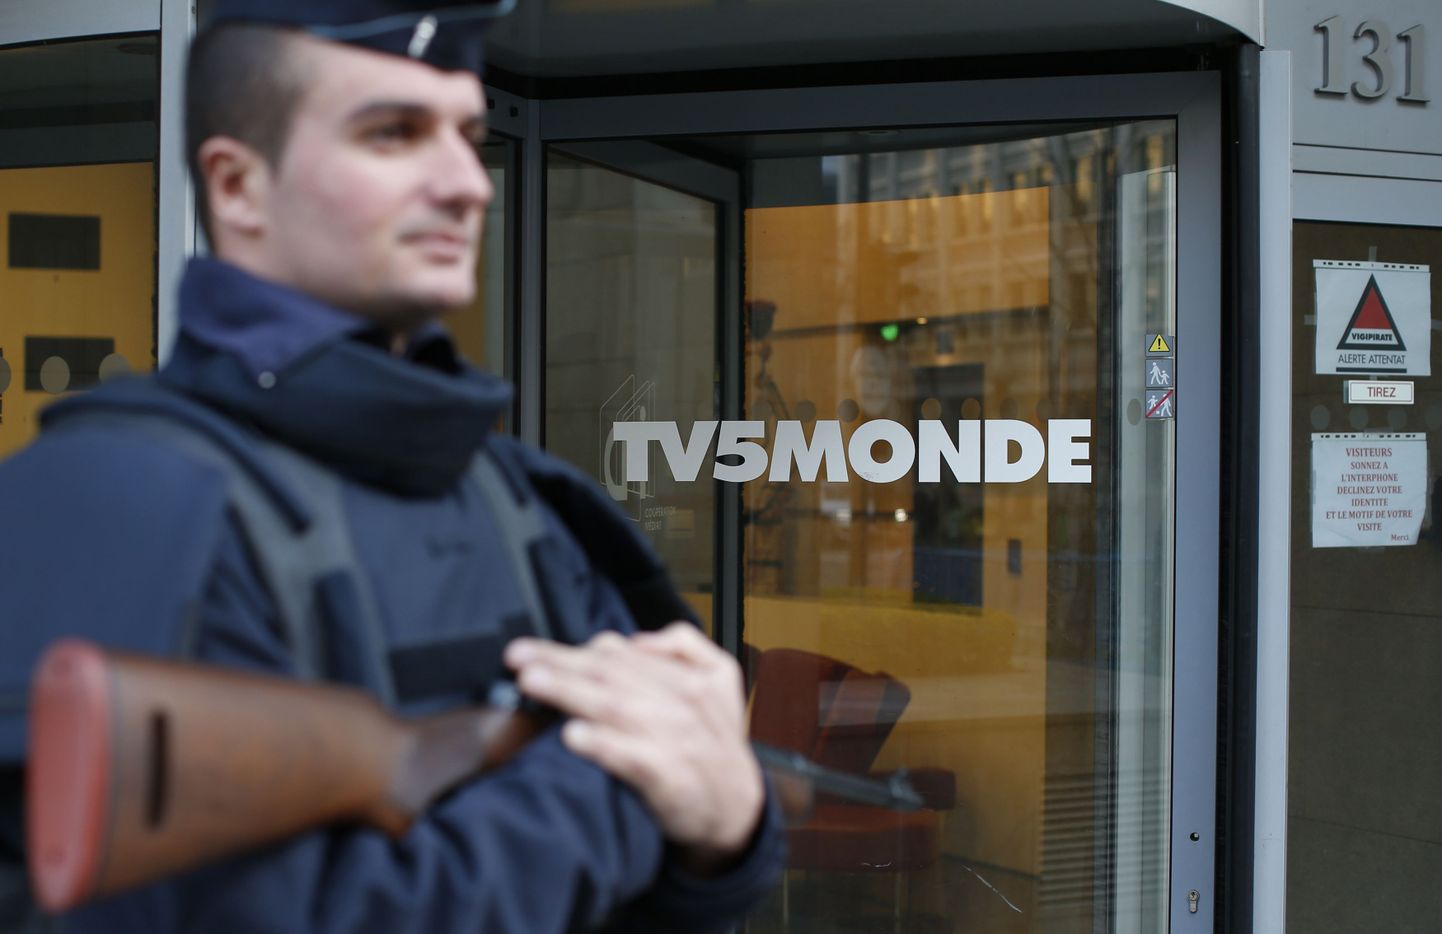 Prantsuse politseinik valvamas telejaama TV5Monde peakorteri sissepääsu.